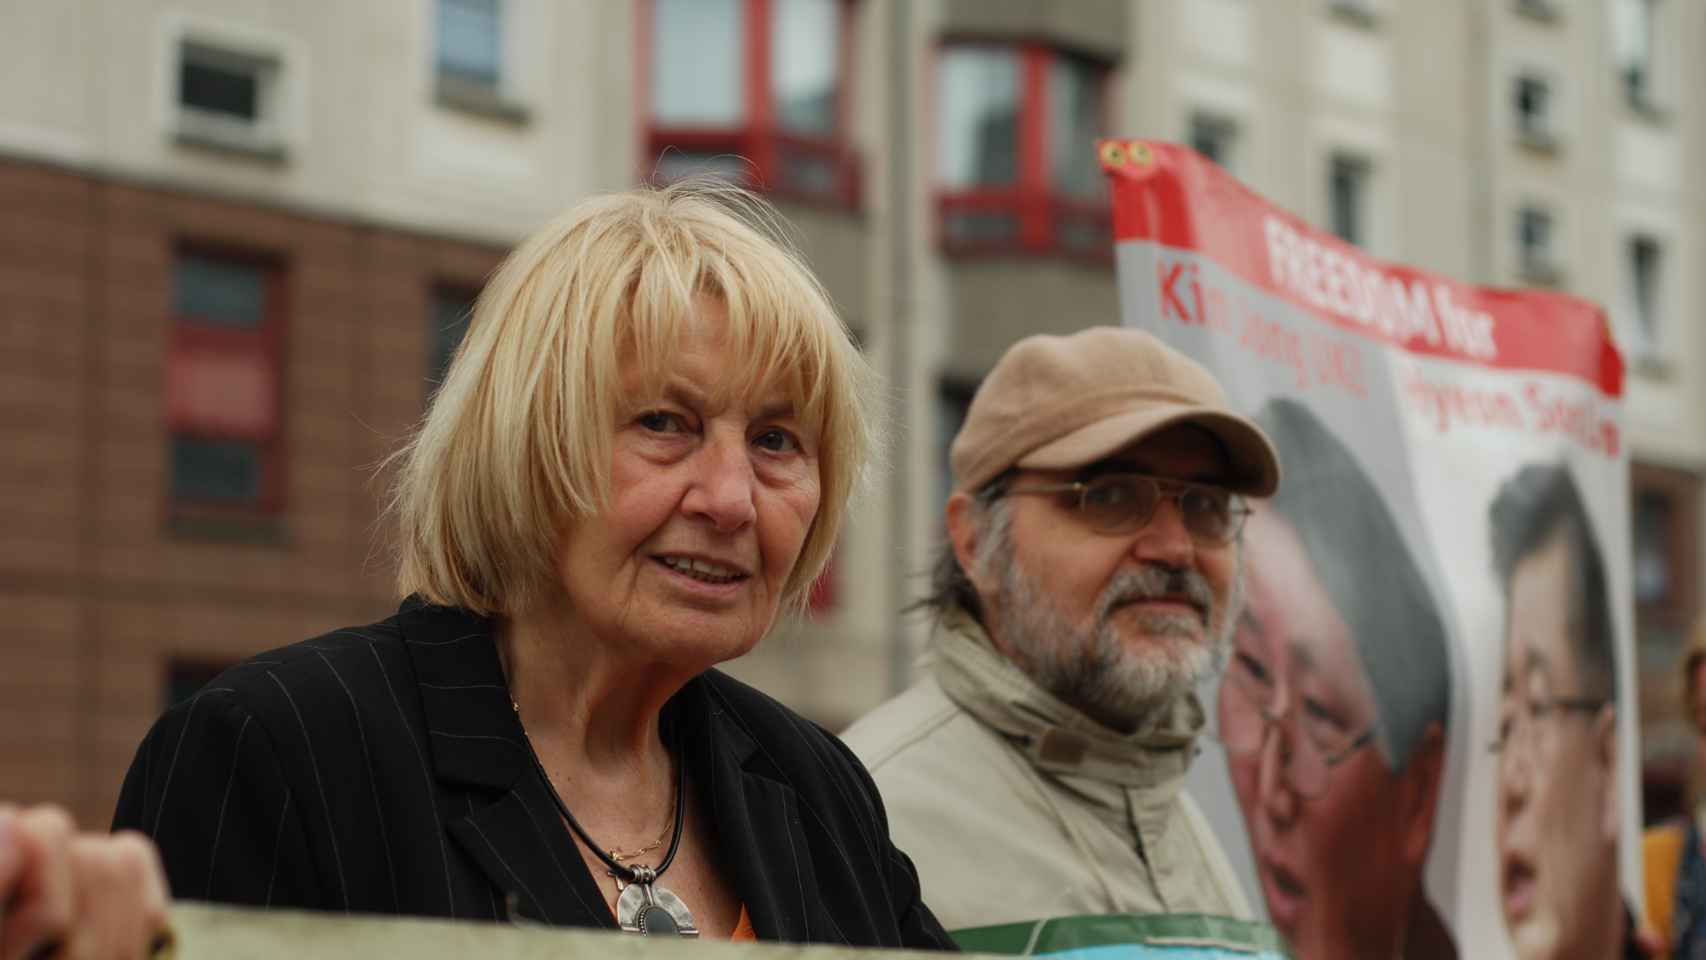 Gerda protesta con otros manifestantes todas las semanas frente a la embajada